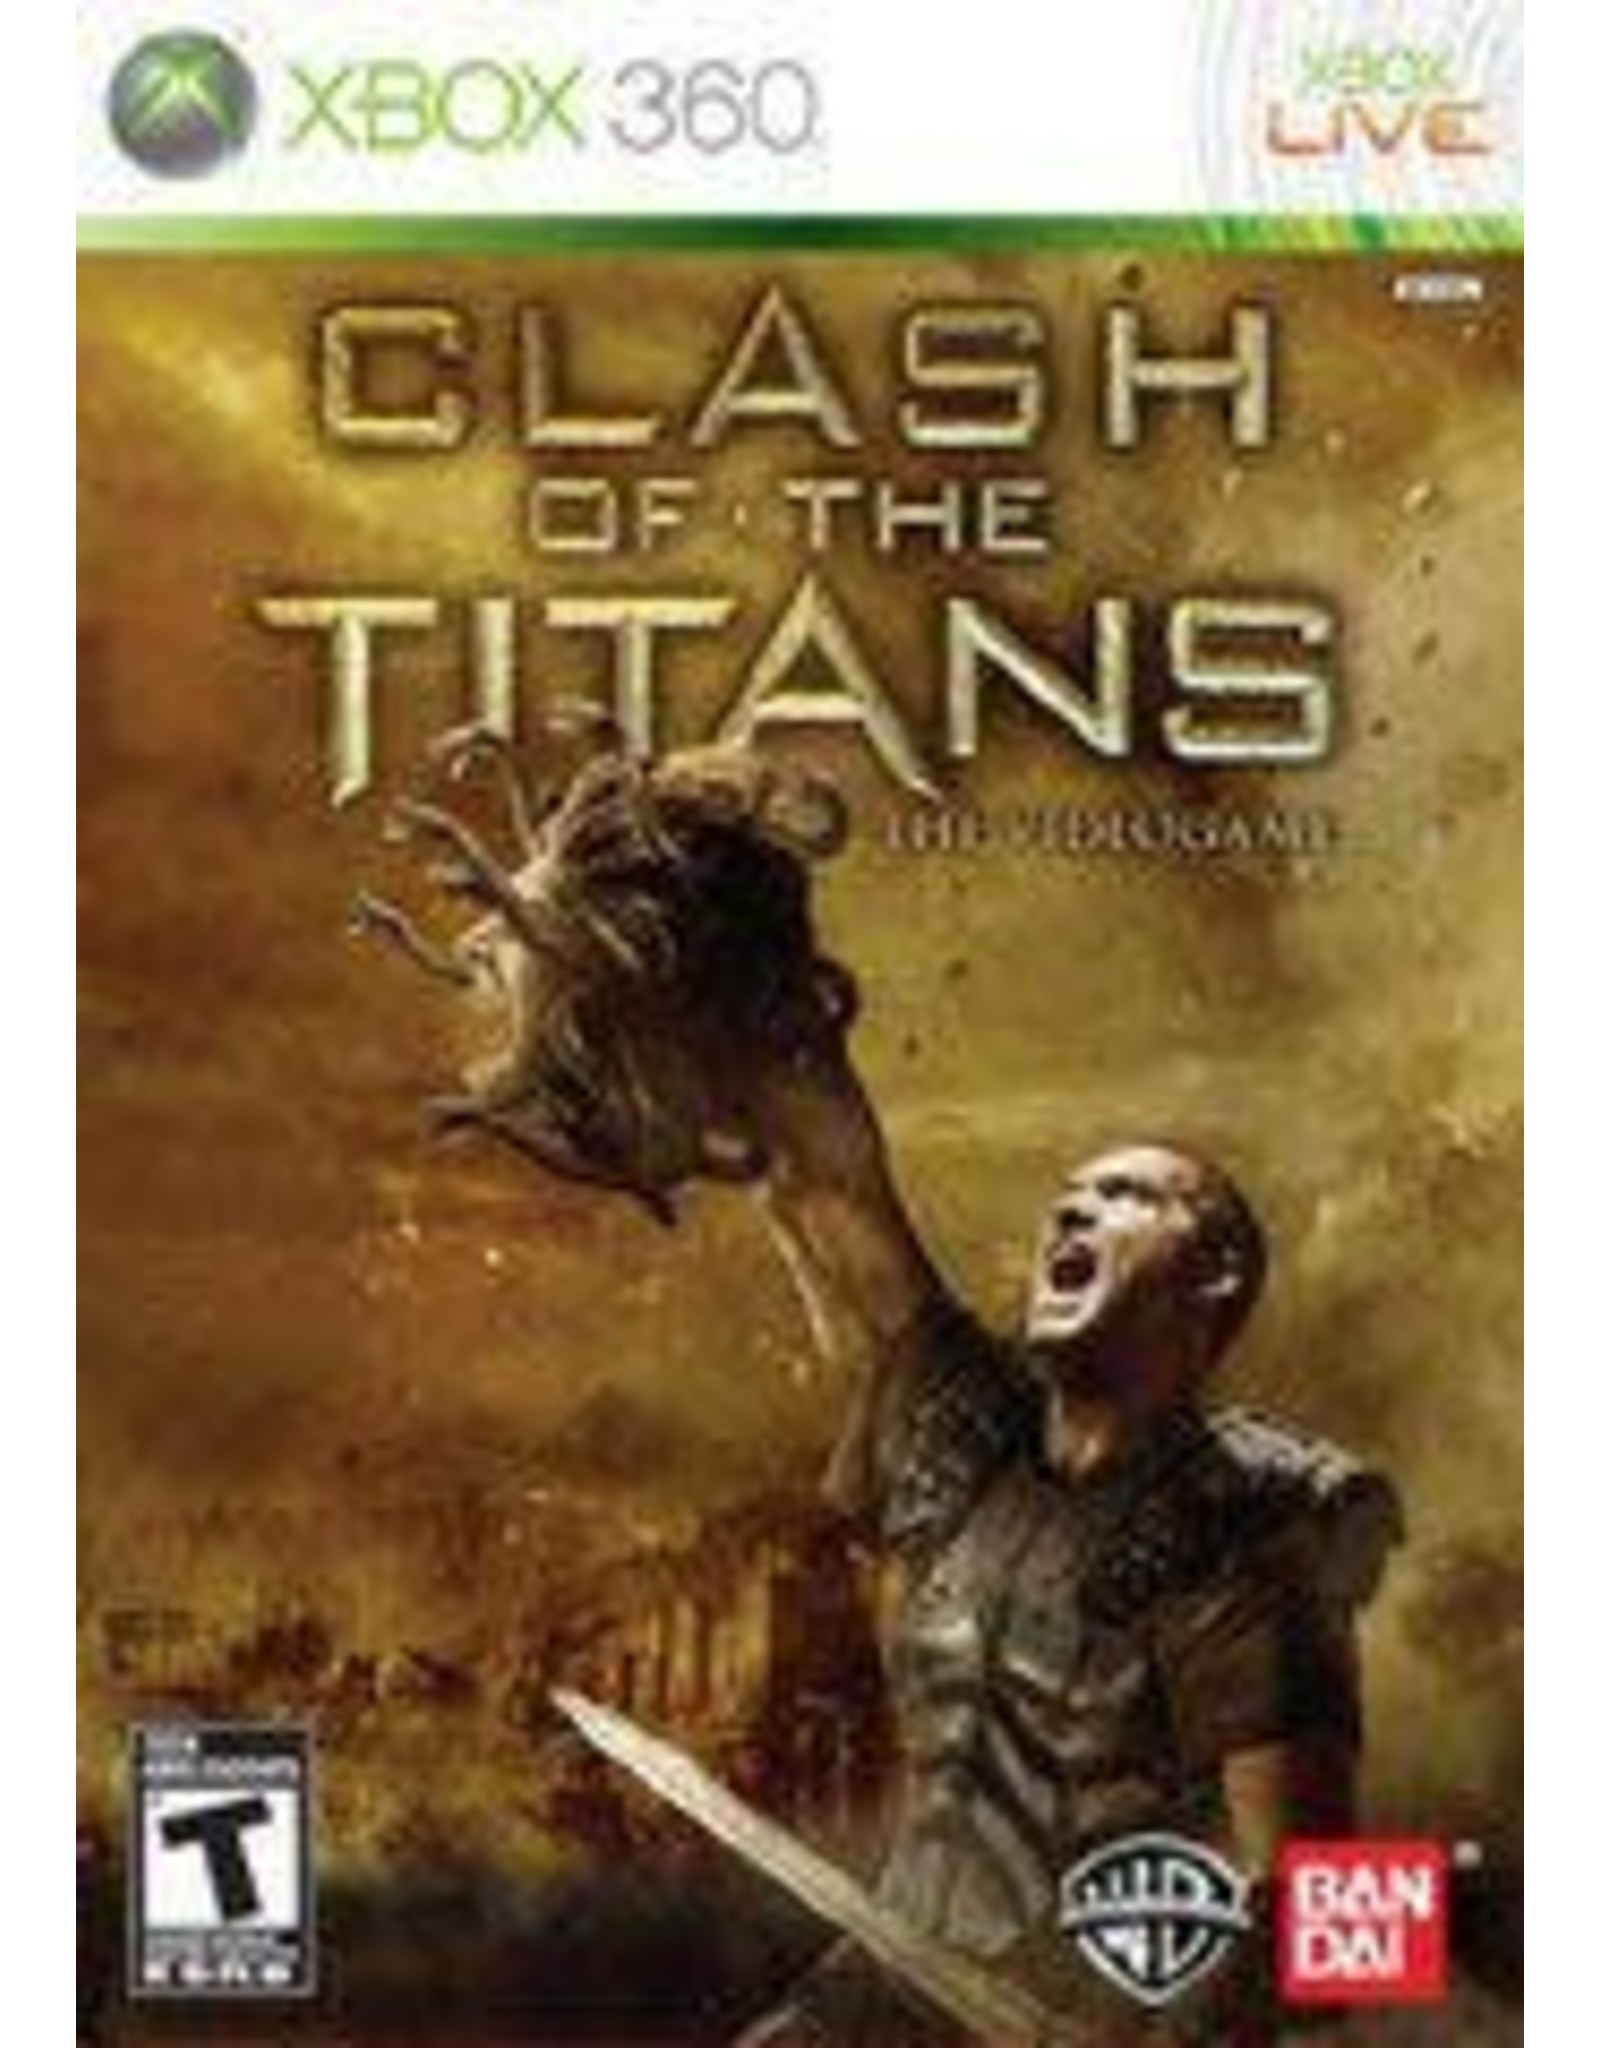 Xbox 360 Clash of the Titans (CiB)